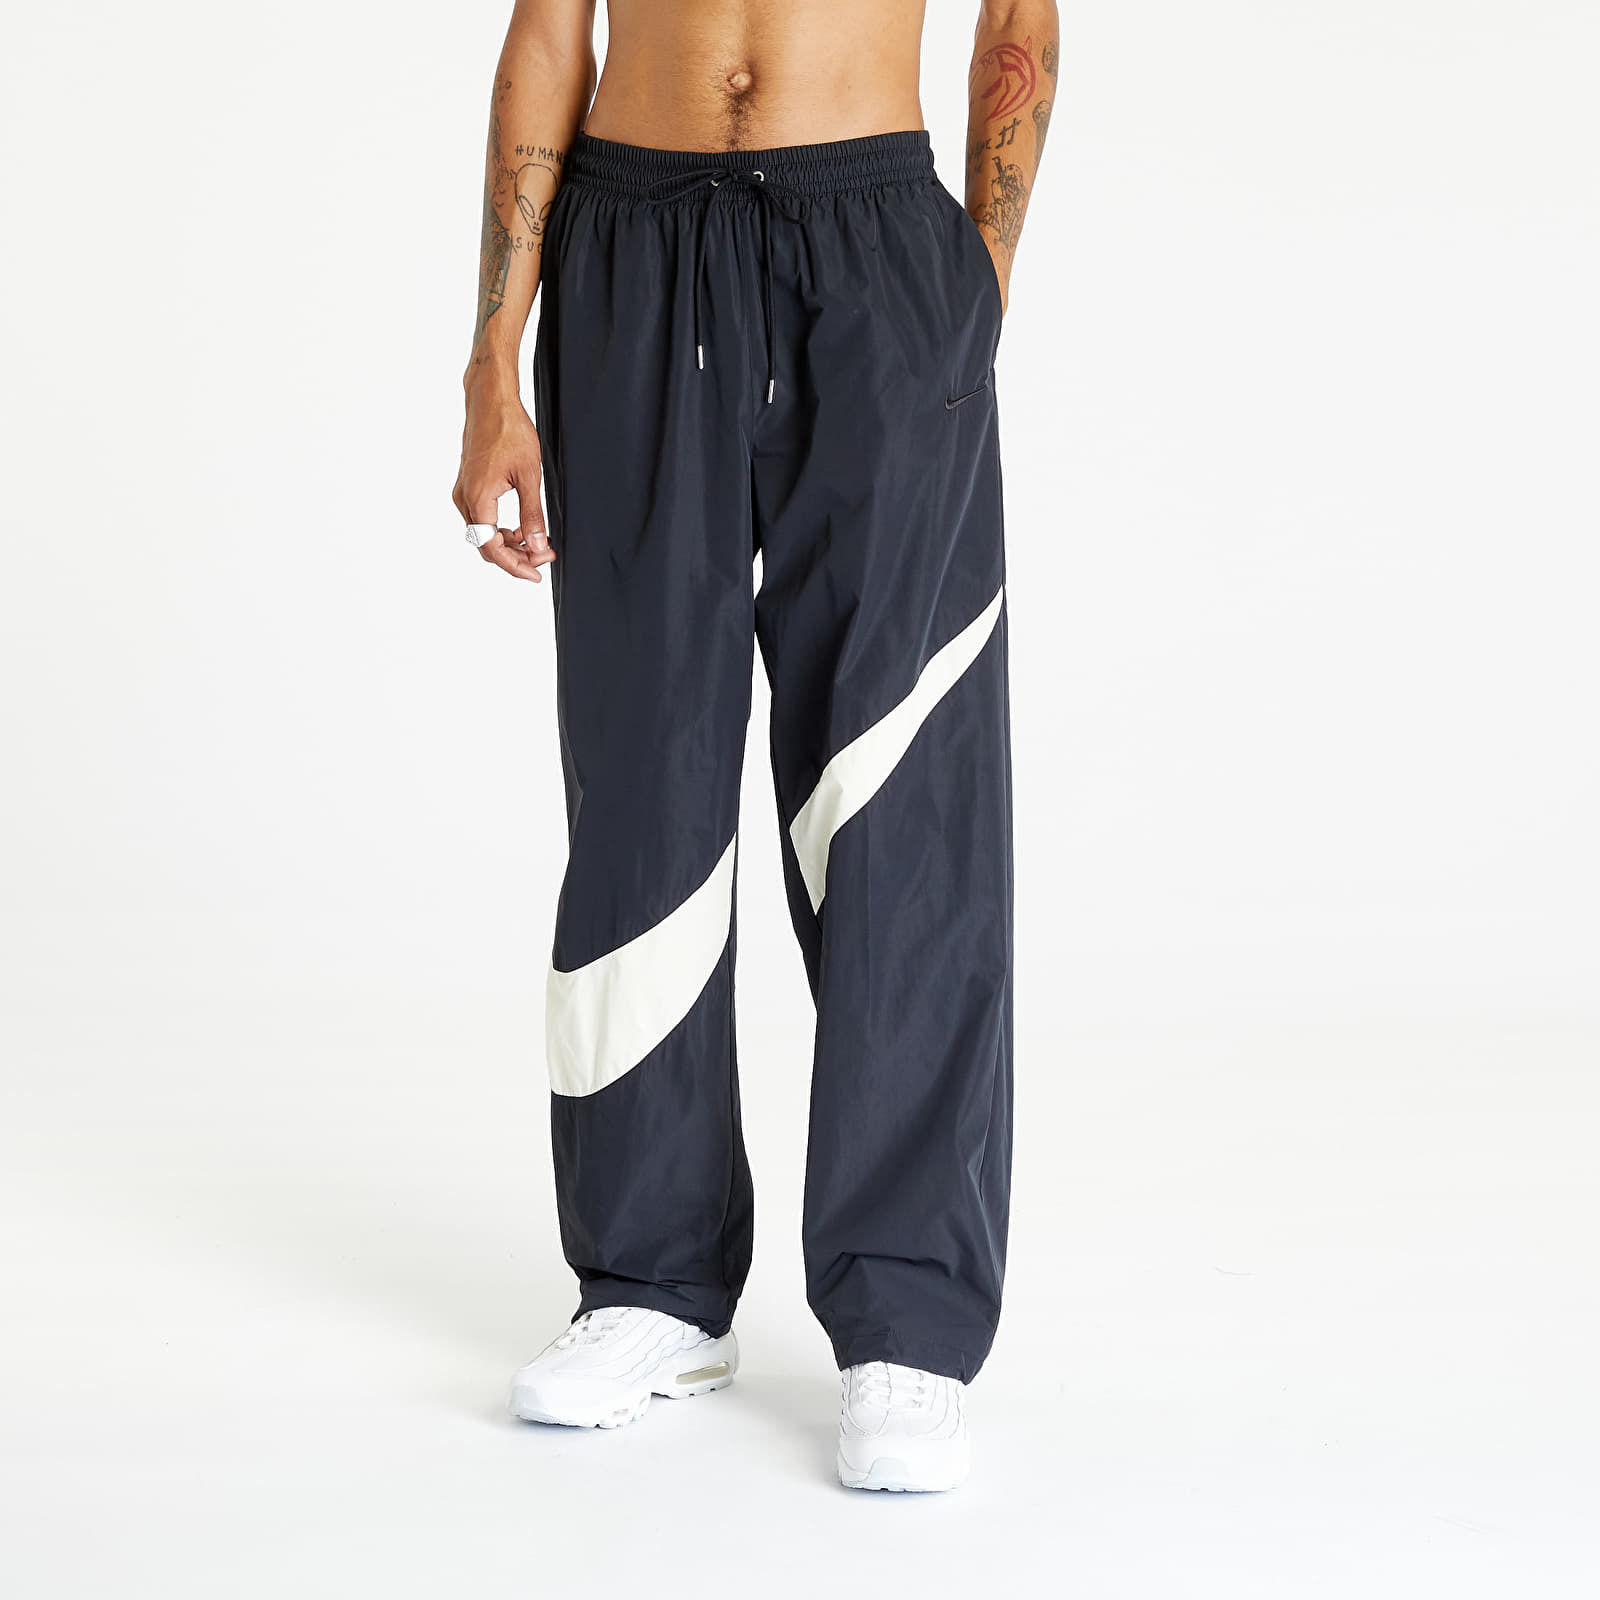 Nike - swoosh men's woven pants black/ coconut milk/ black